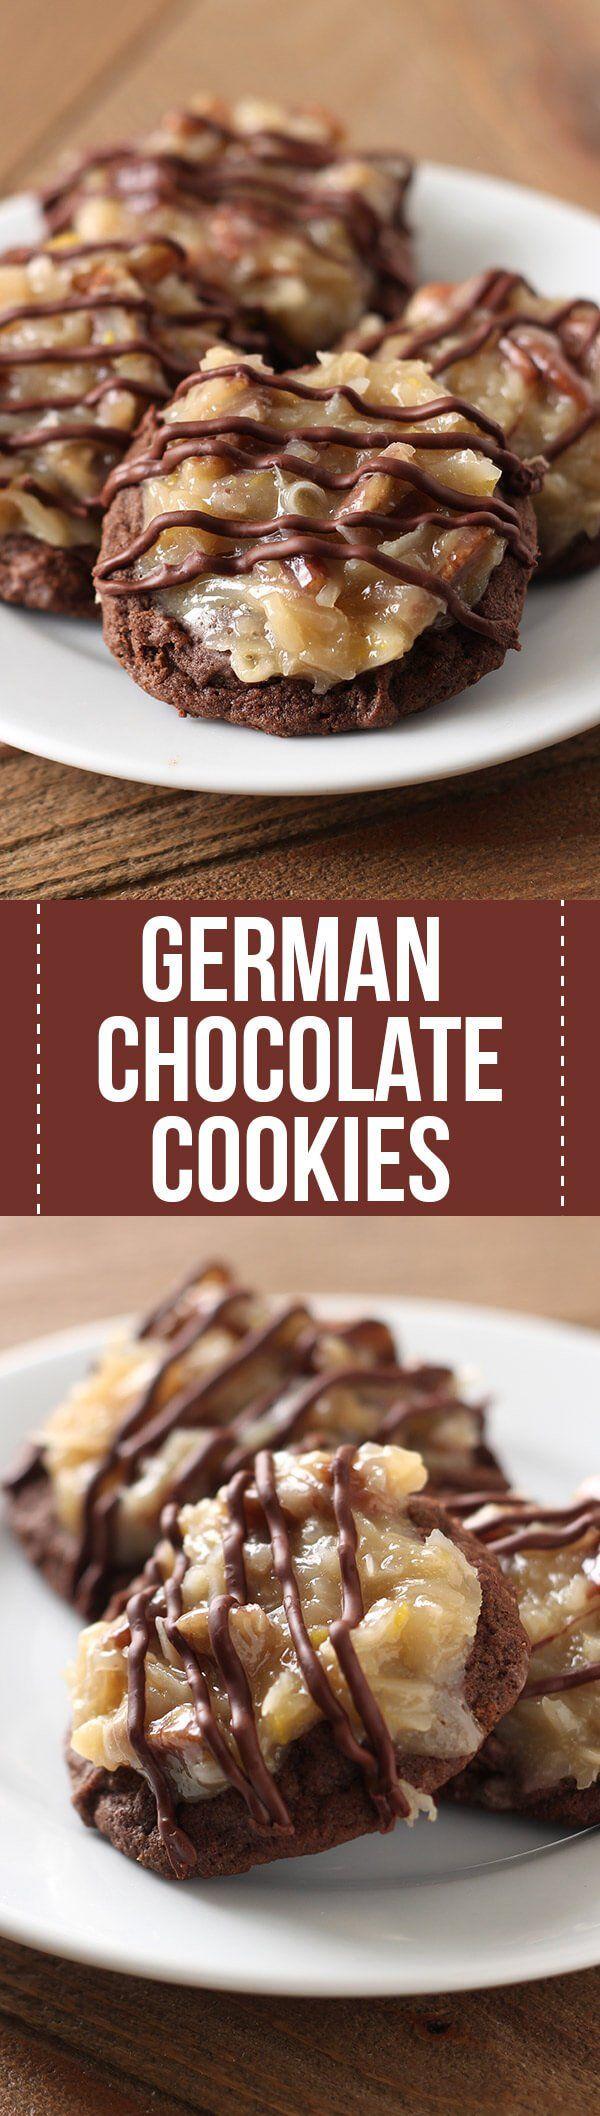 Wedding - German Chocolate Cookies